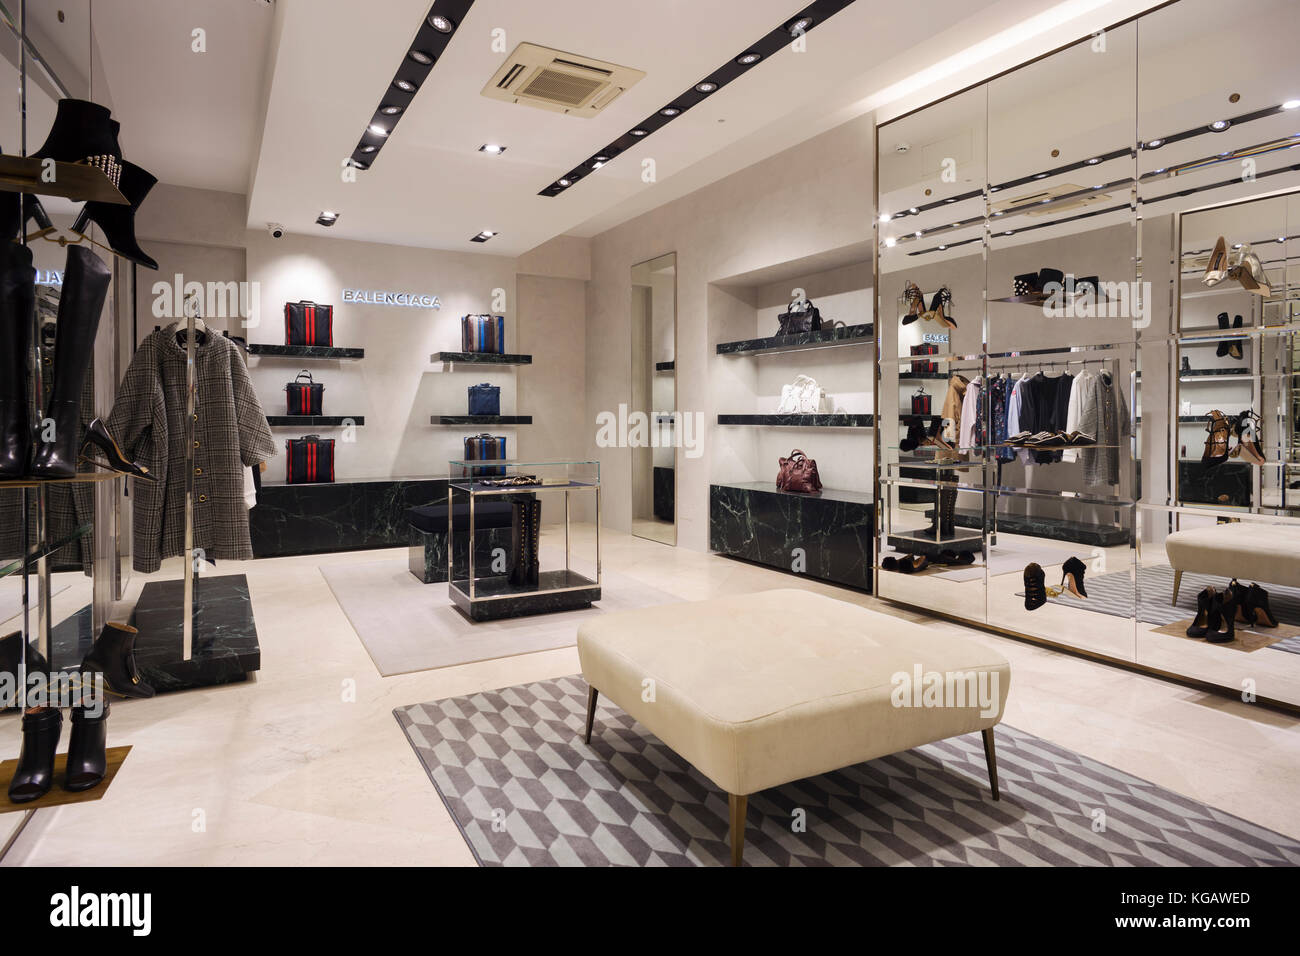 Balenciaga corner store in a fashion mall Stock Photo - Alamy